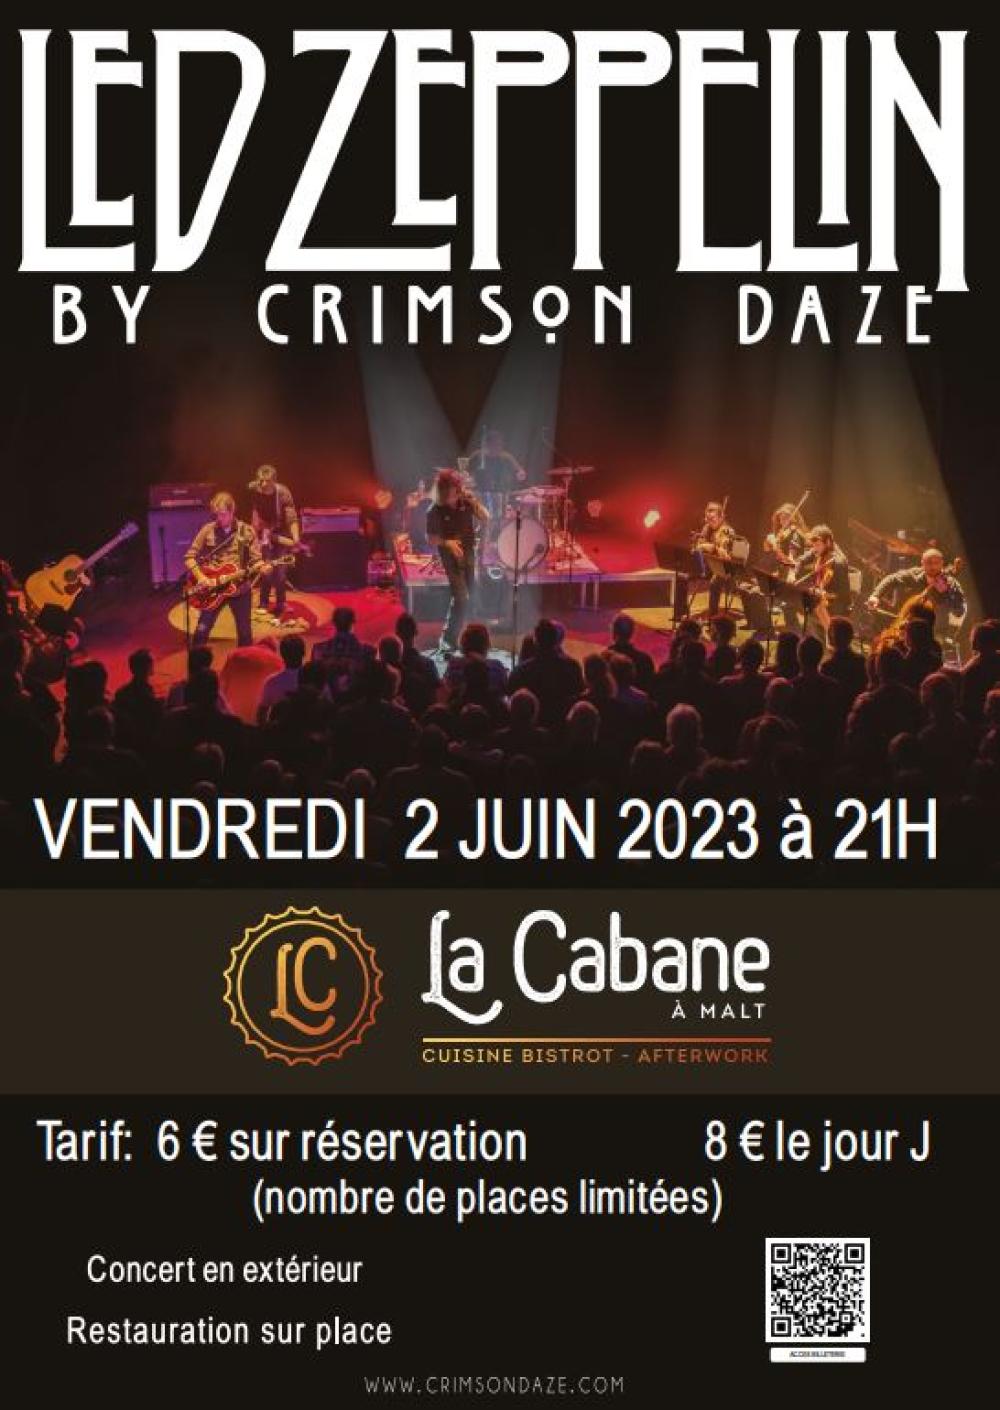 Notre sponsor La Cabane à Malt, organise un concert le vendredi 02 juin 2023 à 21h